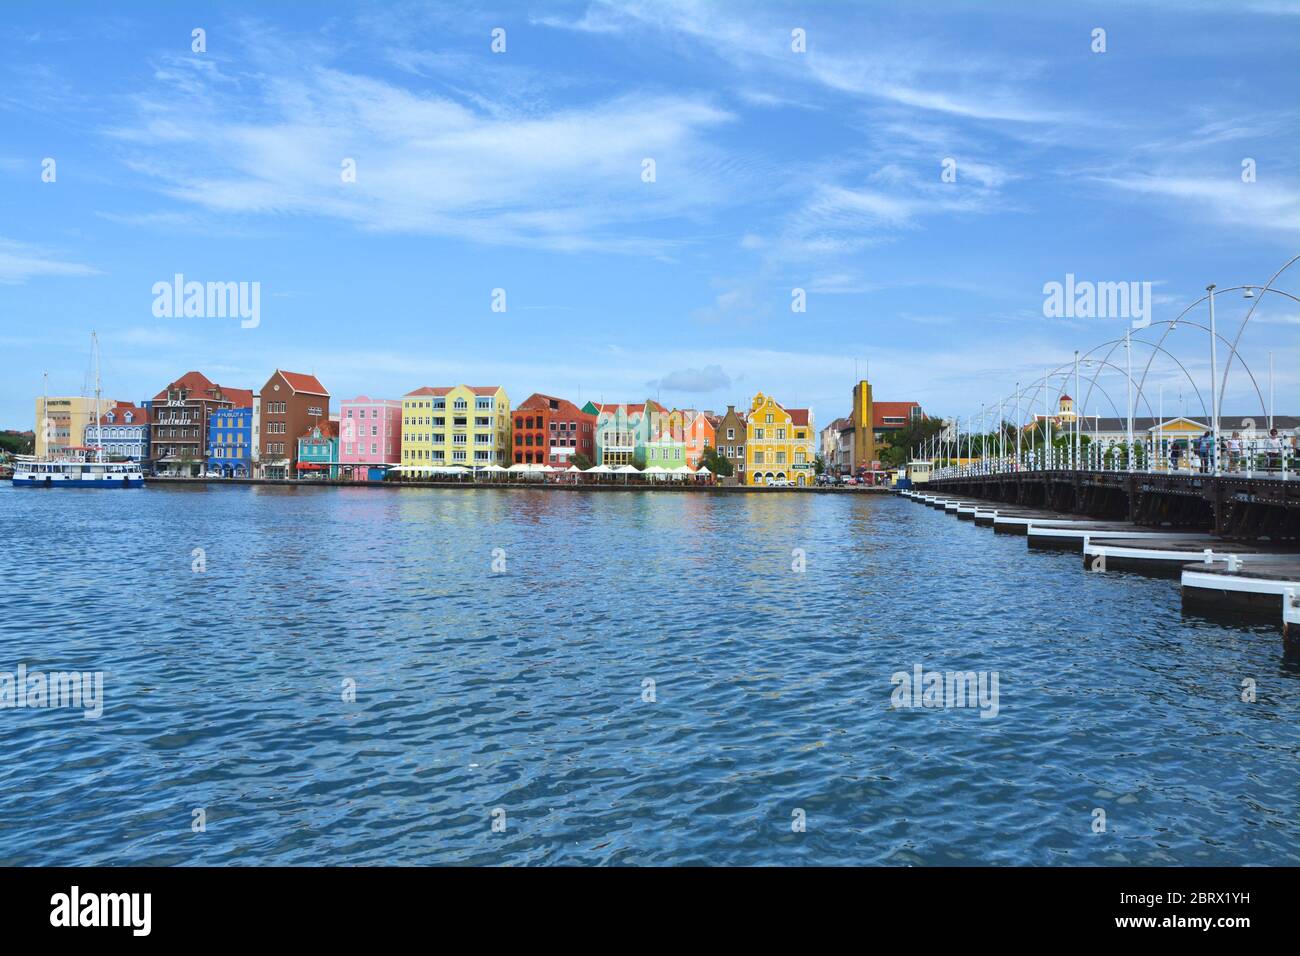 WILLEMSTAD, CURACAO - 27. MÄRZ 2017: Hafengebiet mit Hafen und bunten Häusern in Willemstad, Karibik. Das Stadtzentrum ist UNESCO-Weltkulturerbe S Stockfoto